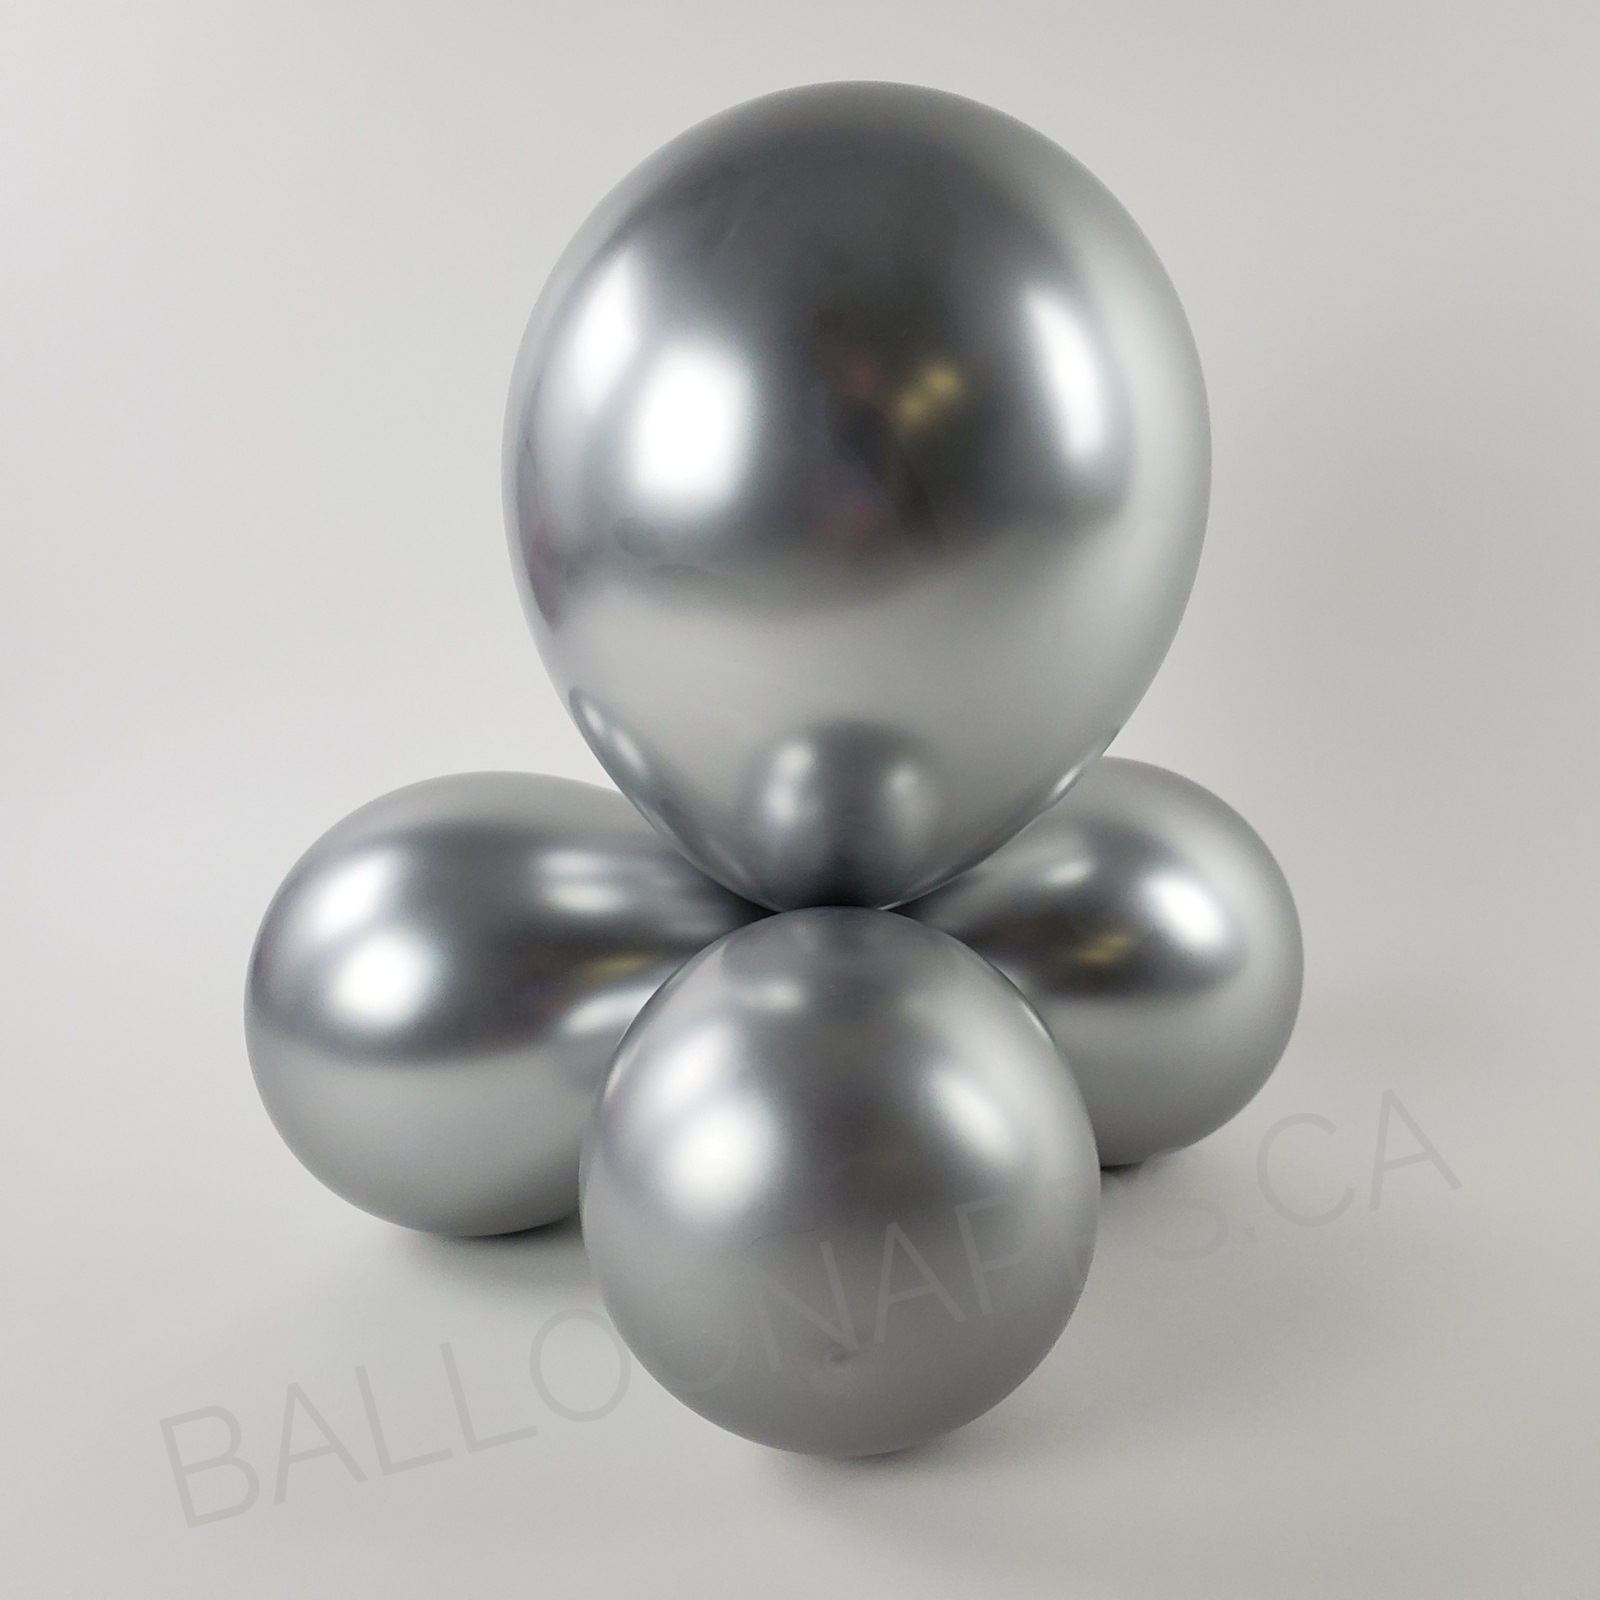 balloon texture BET (50) 14